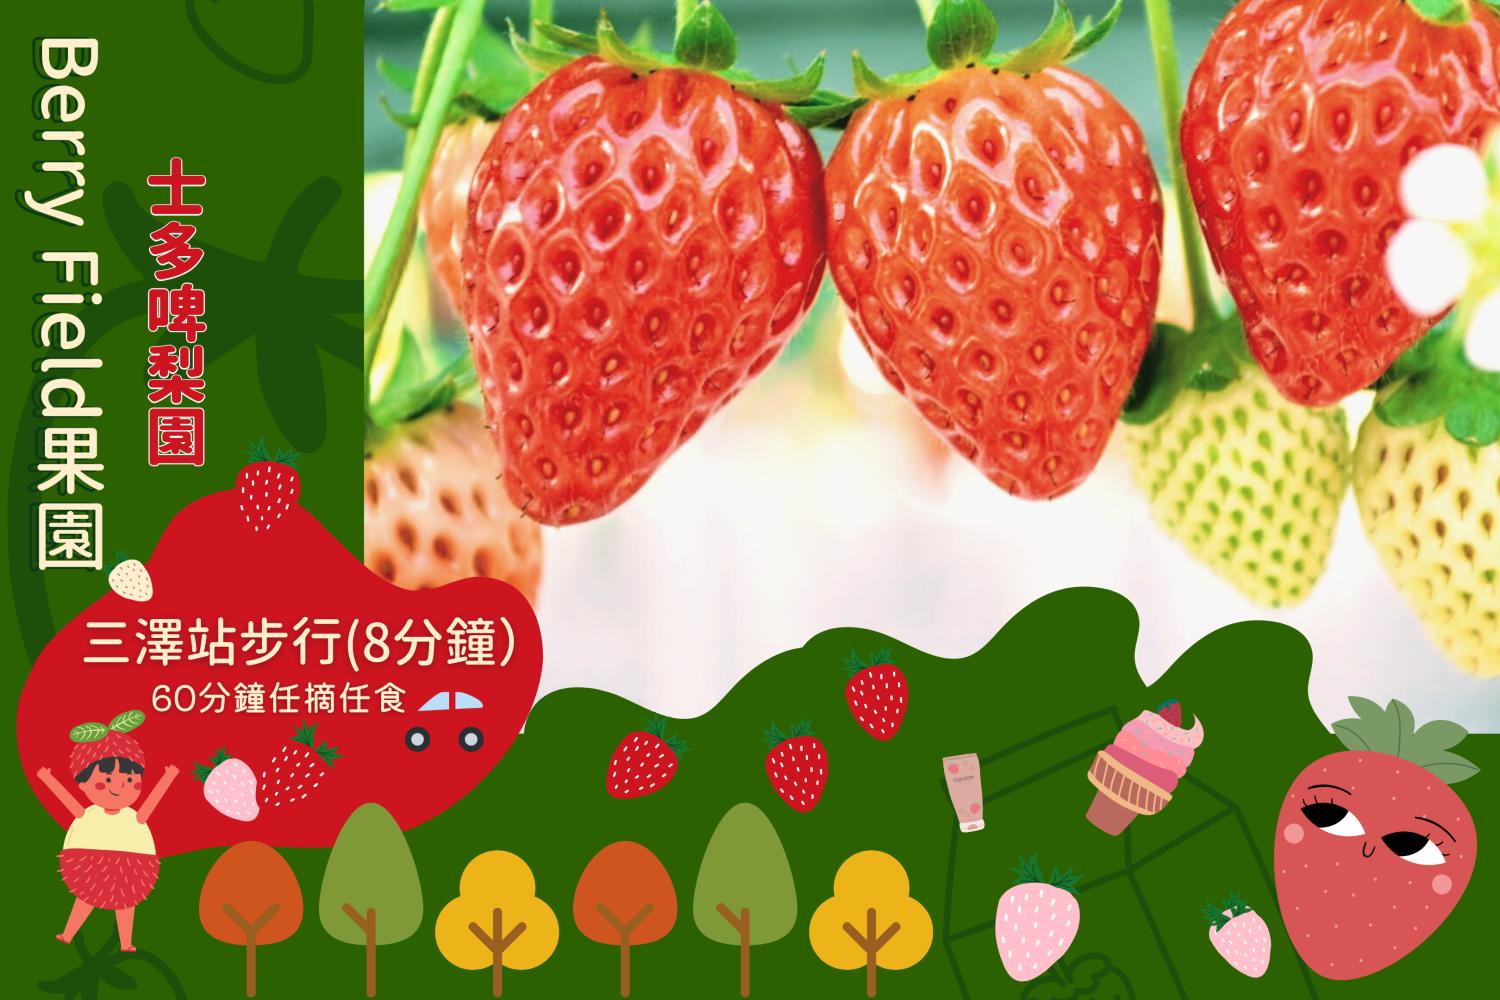 Young's Holidays 悠揚假期 【田園草莓之味】福岡Berry Field草莓60分鐘任食體驗 1